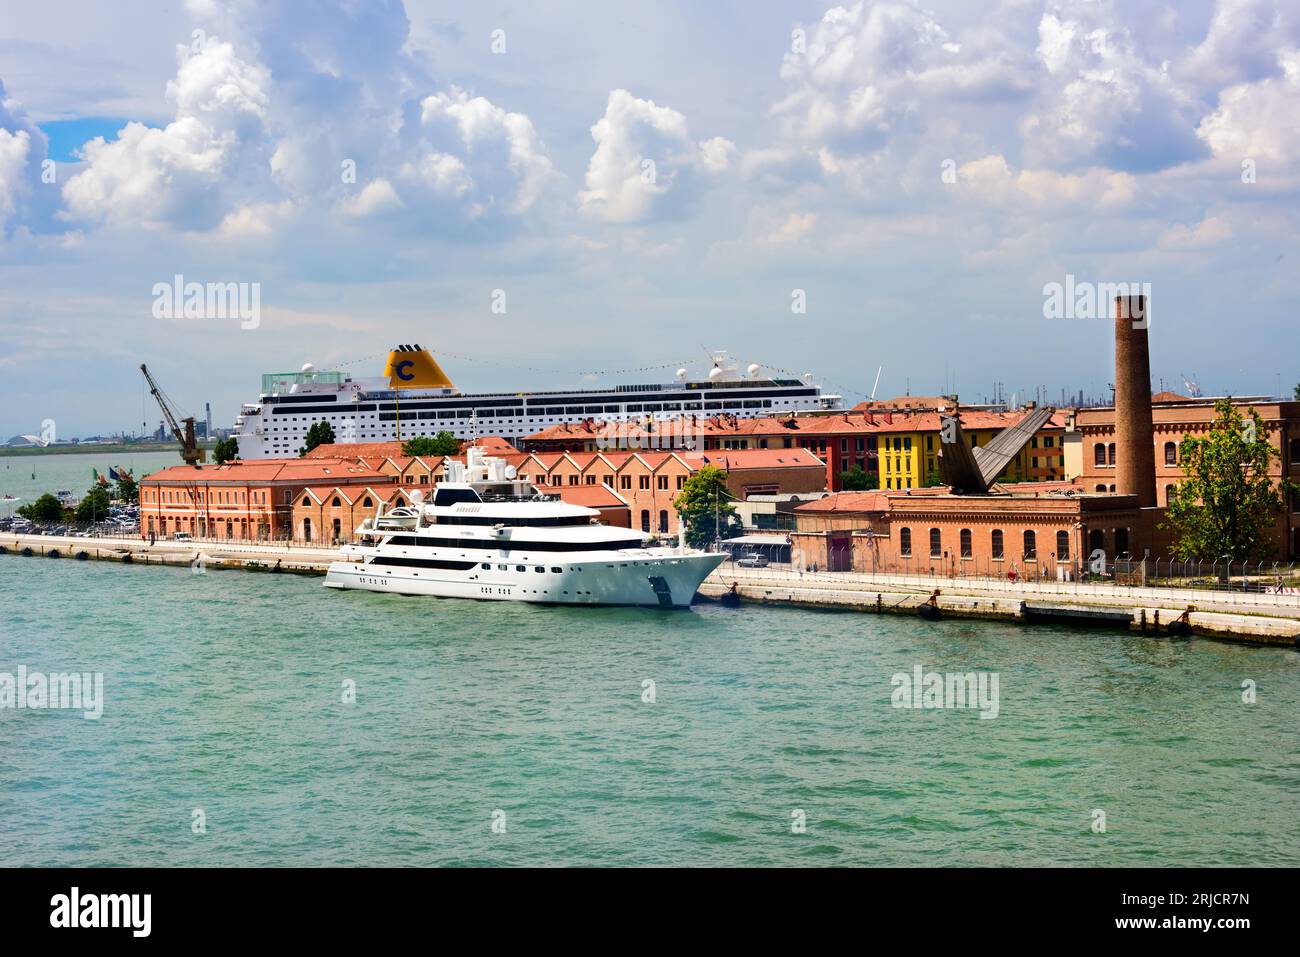 Venedig, Italien - 13. Juni 2016: Blick auf die Stadt Venedig von der Seite eines Kreuzfahrtschiffs. Venedig ist einer der geschäftigsten Kreuzfahrthäfen in Europa Stockfoto